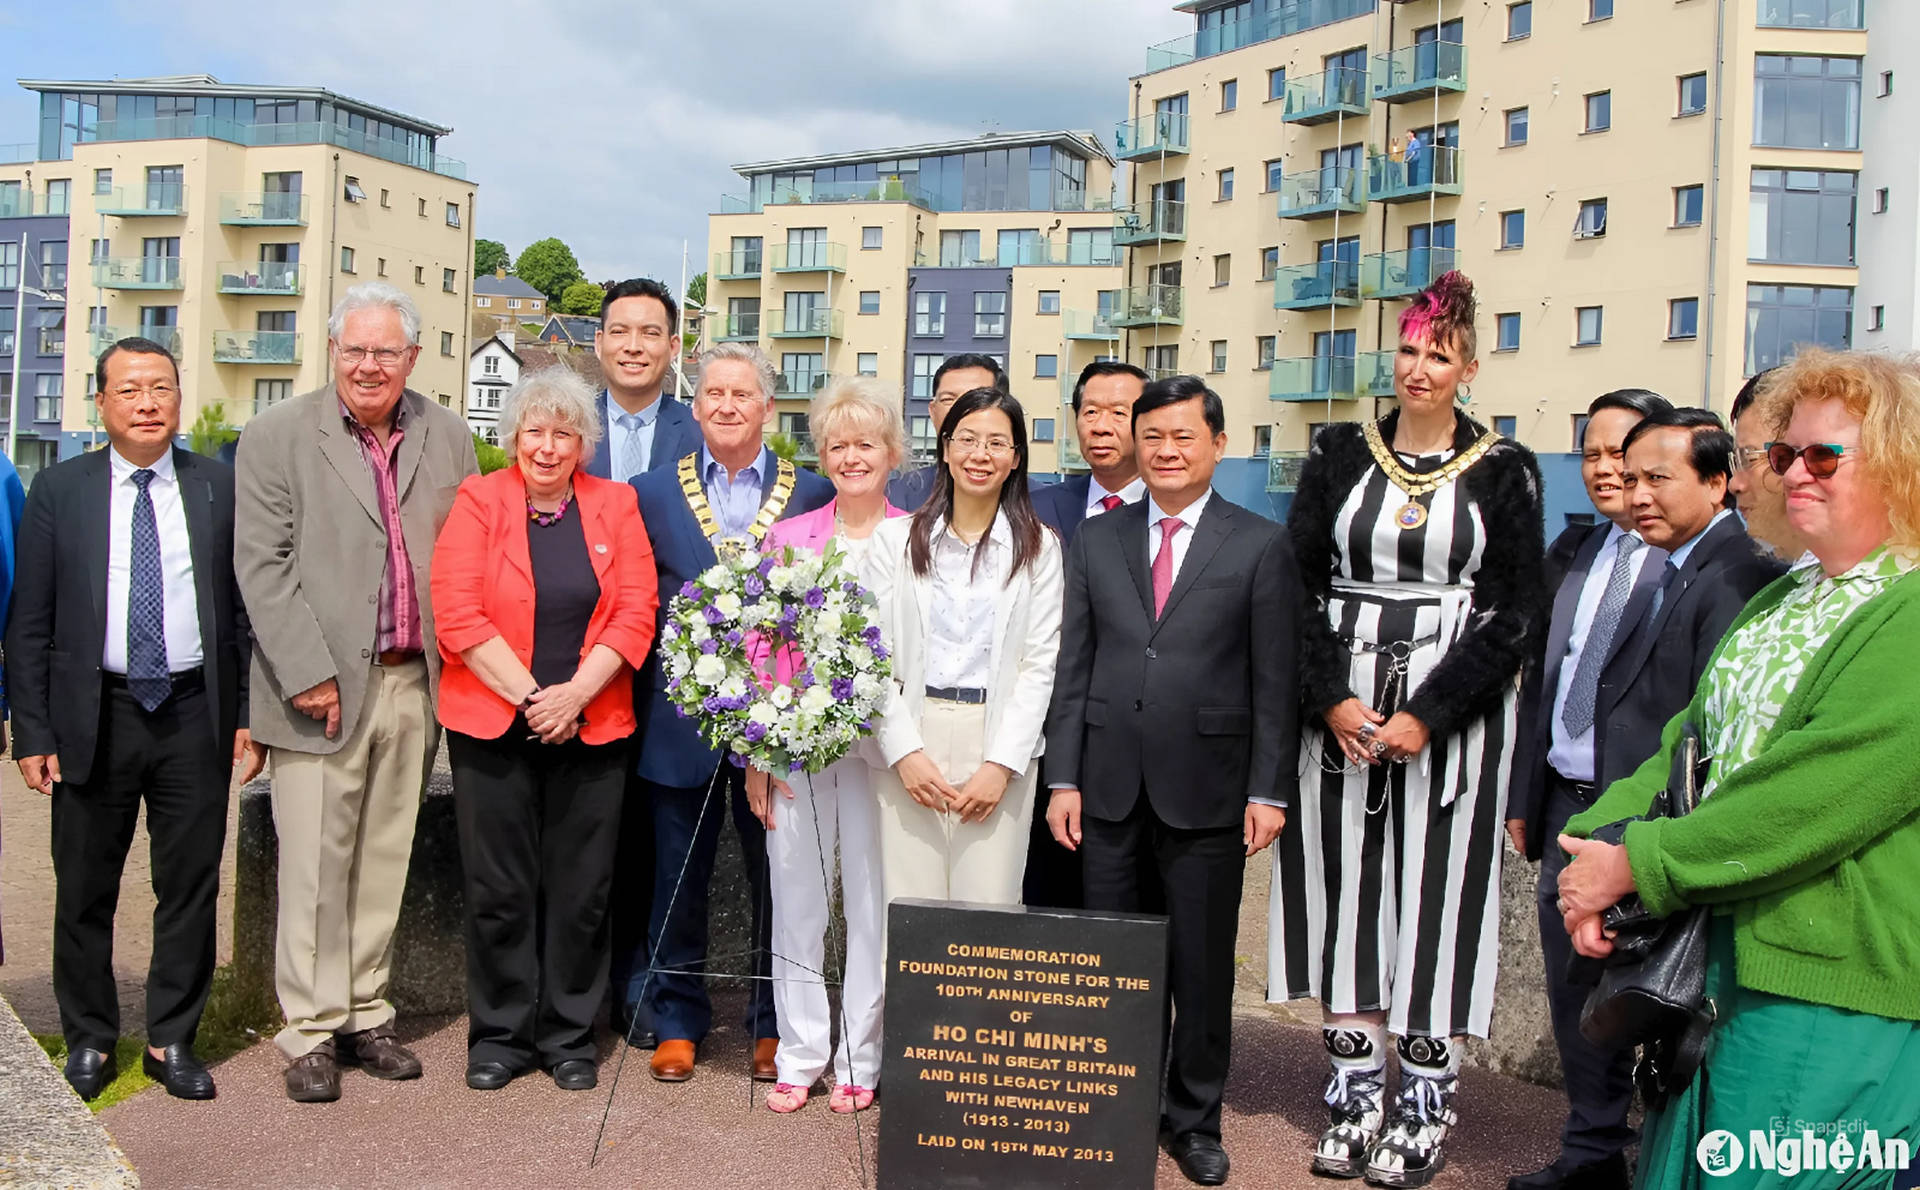 Bí thư Tỉnh ủy Thái Thanh Quý và đoàn đại biểu chụp ảnh lưu niệm tại Bia tưởng niệm Chủ tịch Hồ Chí Minh trên bến cảng thị trấn Newhaven.